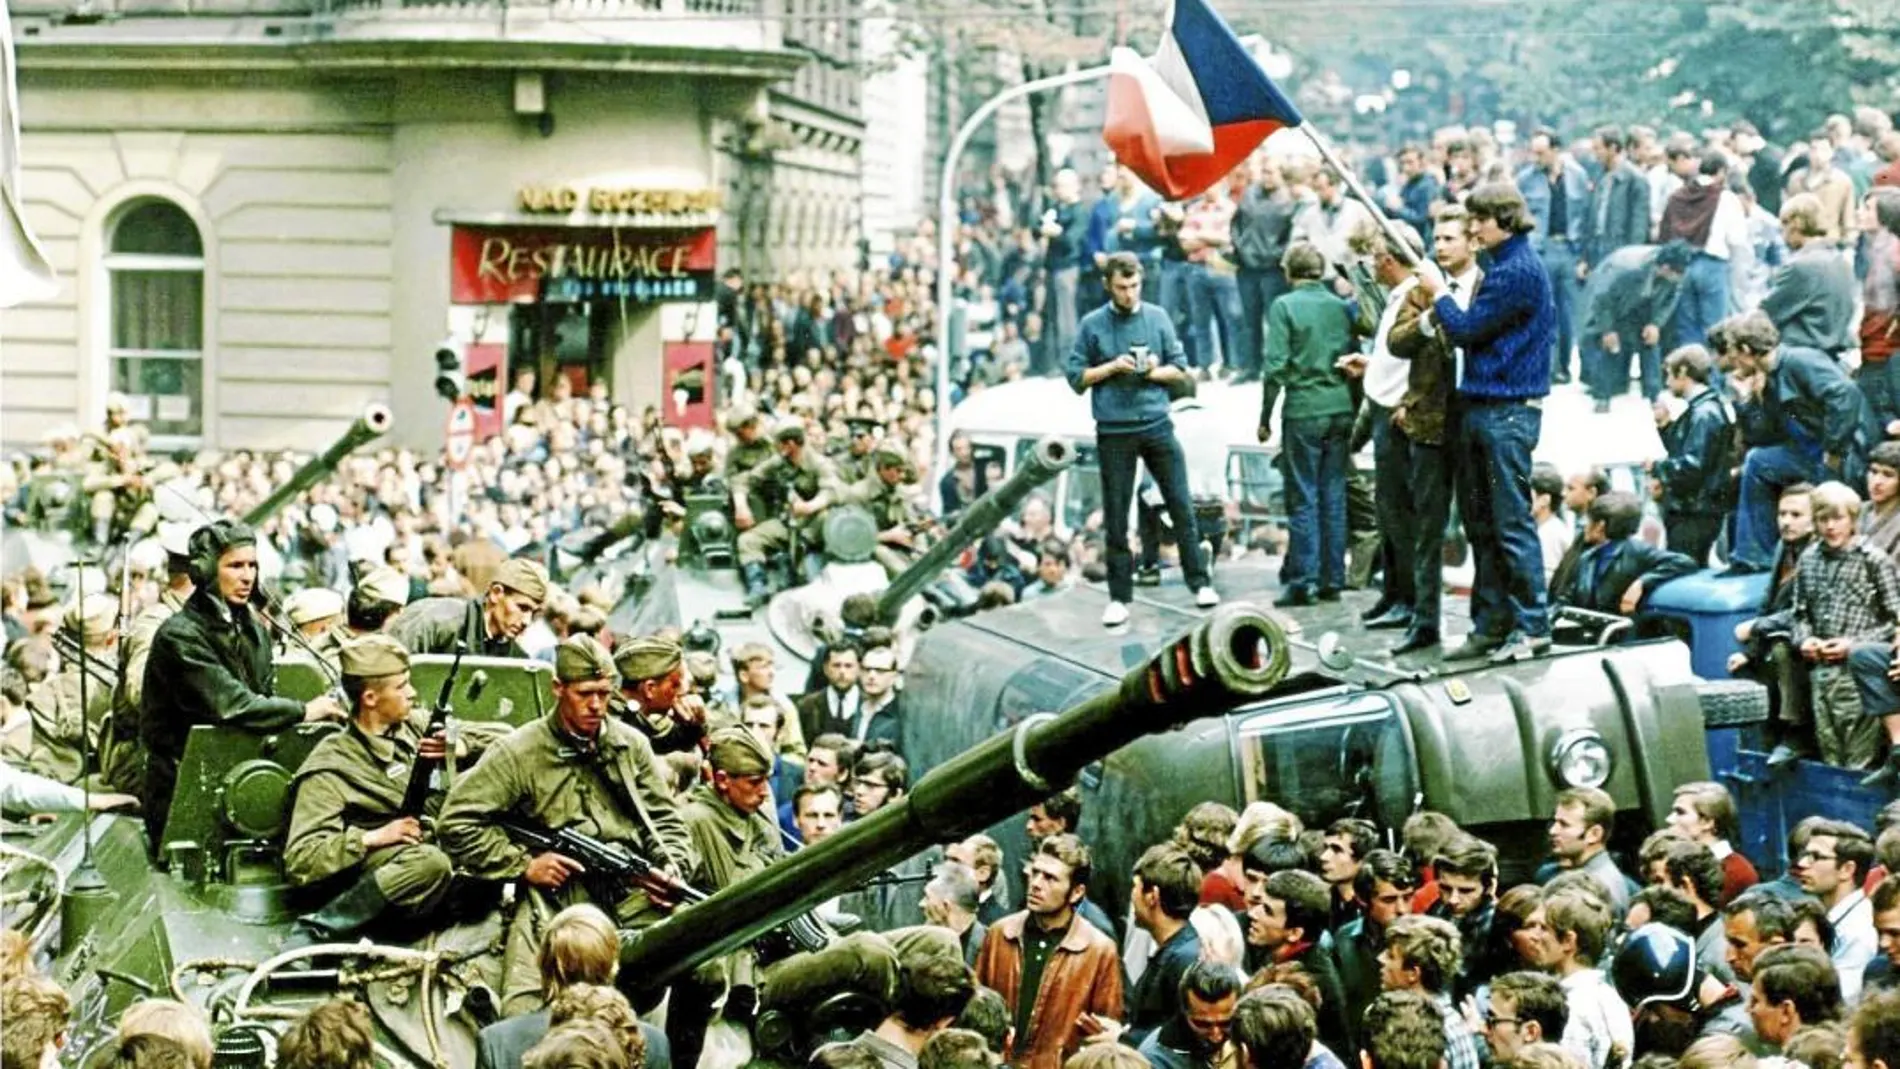 Las imágenes muestran los escenarios de la Primavera de Praga entonces y hace 50 años